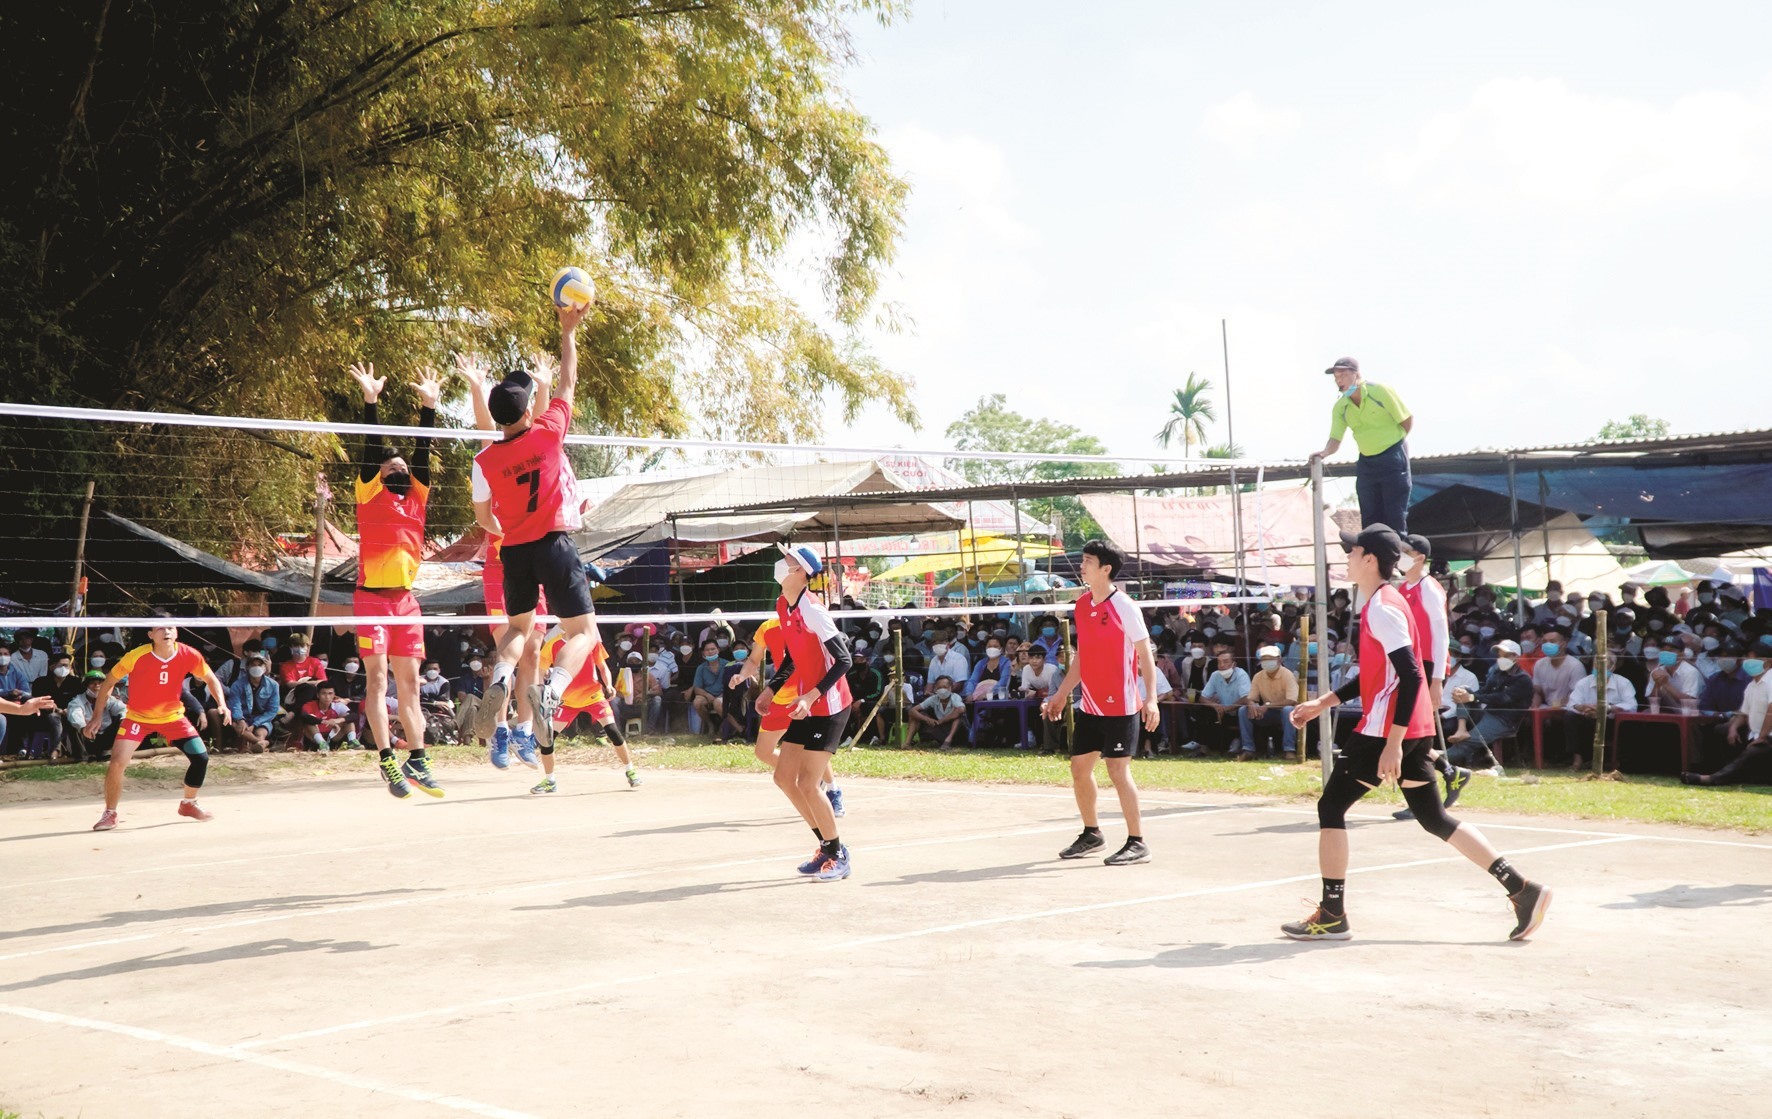 Thi đấu bóng chuyền là một trong các hoạt động thể thao sôi nổi tại Lễ hội Bà Thu Bồn.